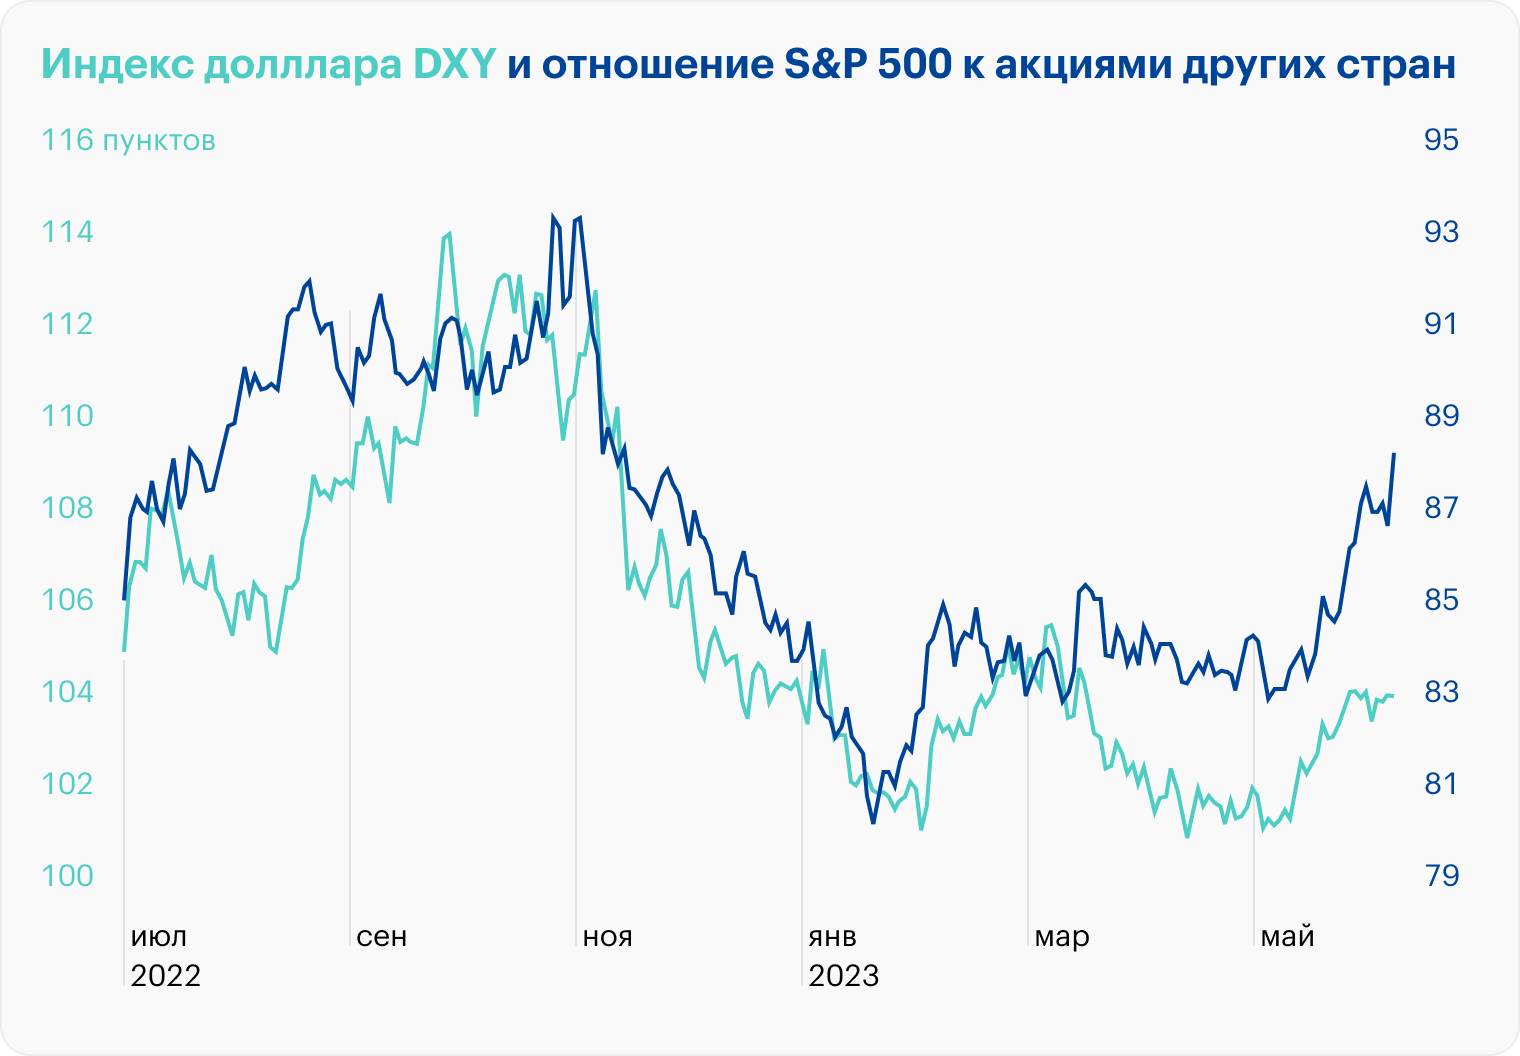 Когда доллар укрепляется, американский рынок акций чувствует себя лучше других. Источник: данные TradingView по DXY, S&P 500 и ACWX